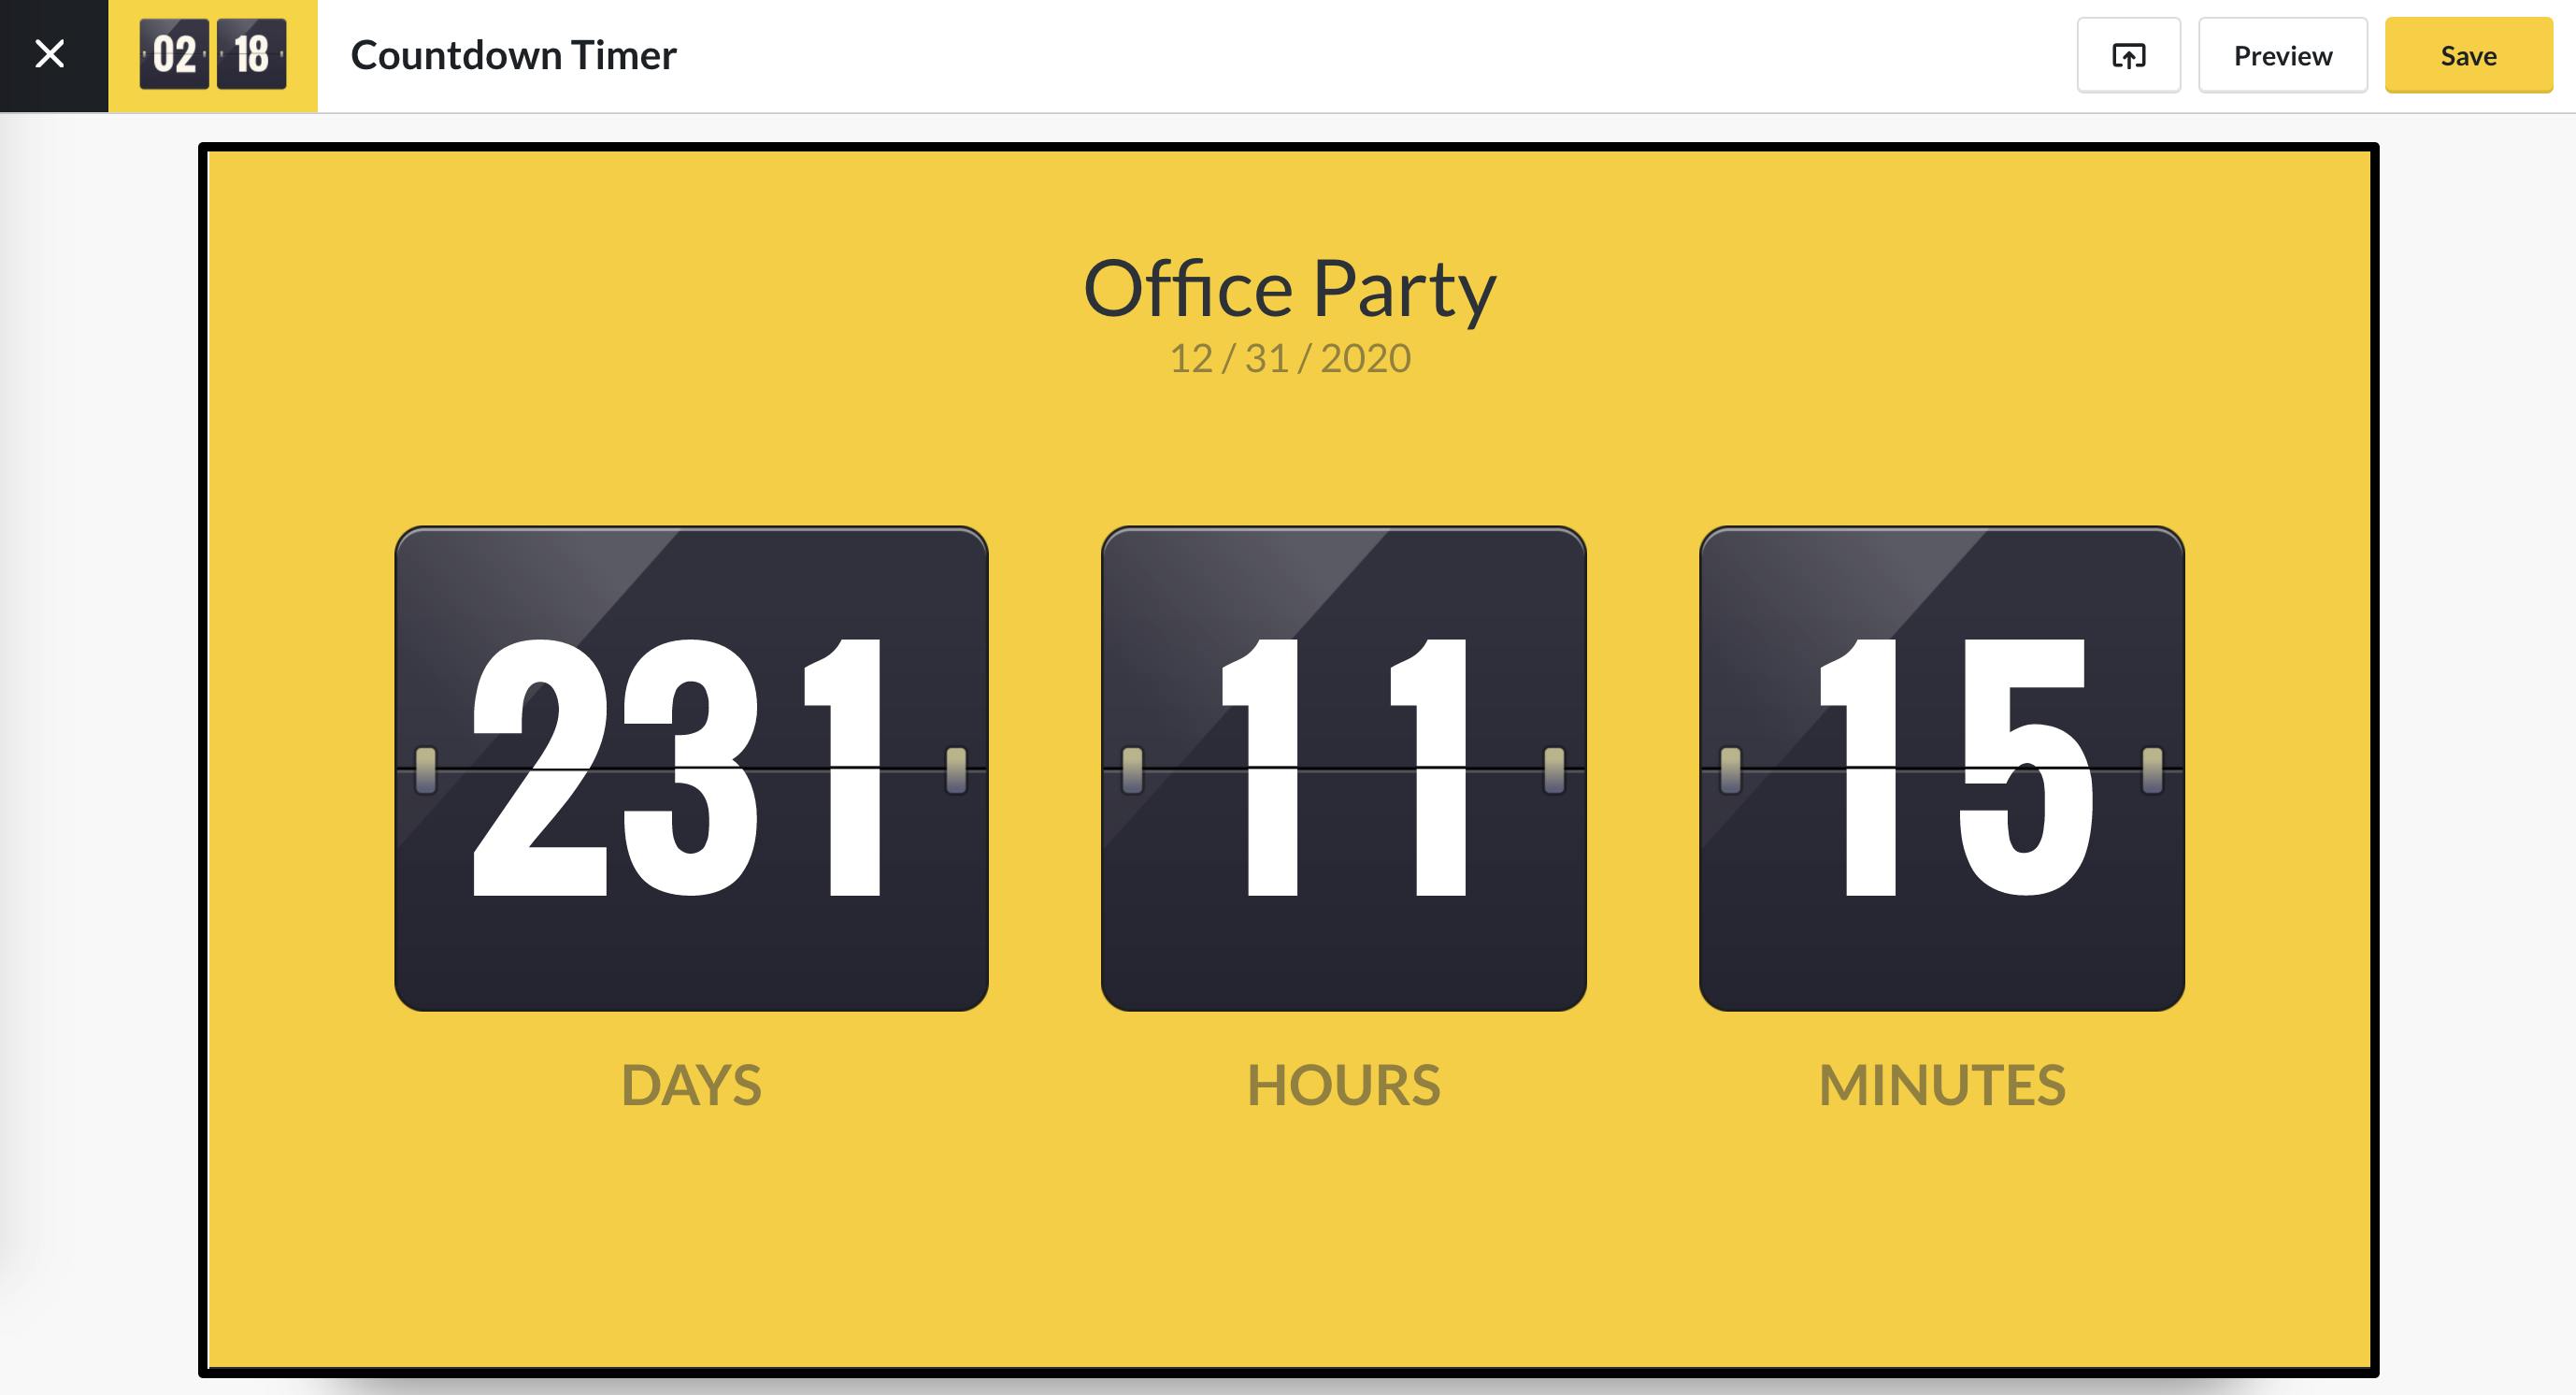 ScreenCloud Countdown Timer App Guide ScreenCloud